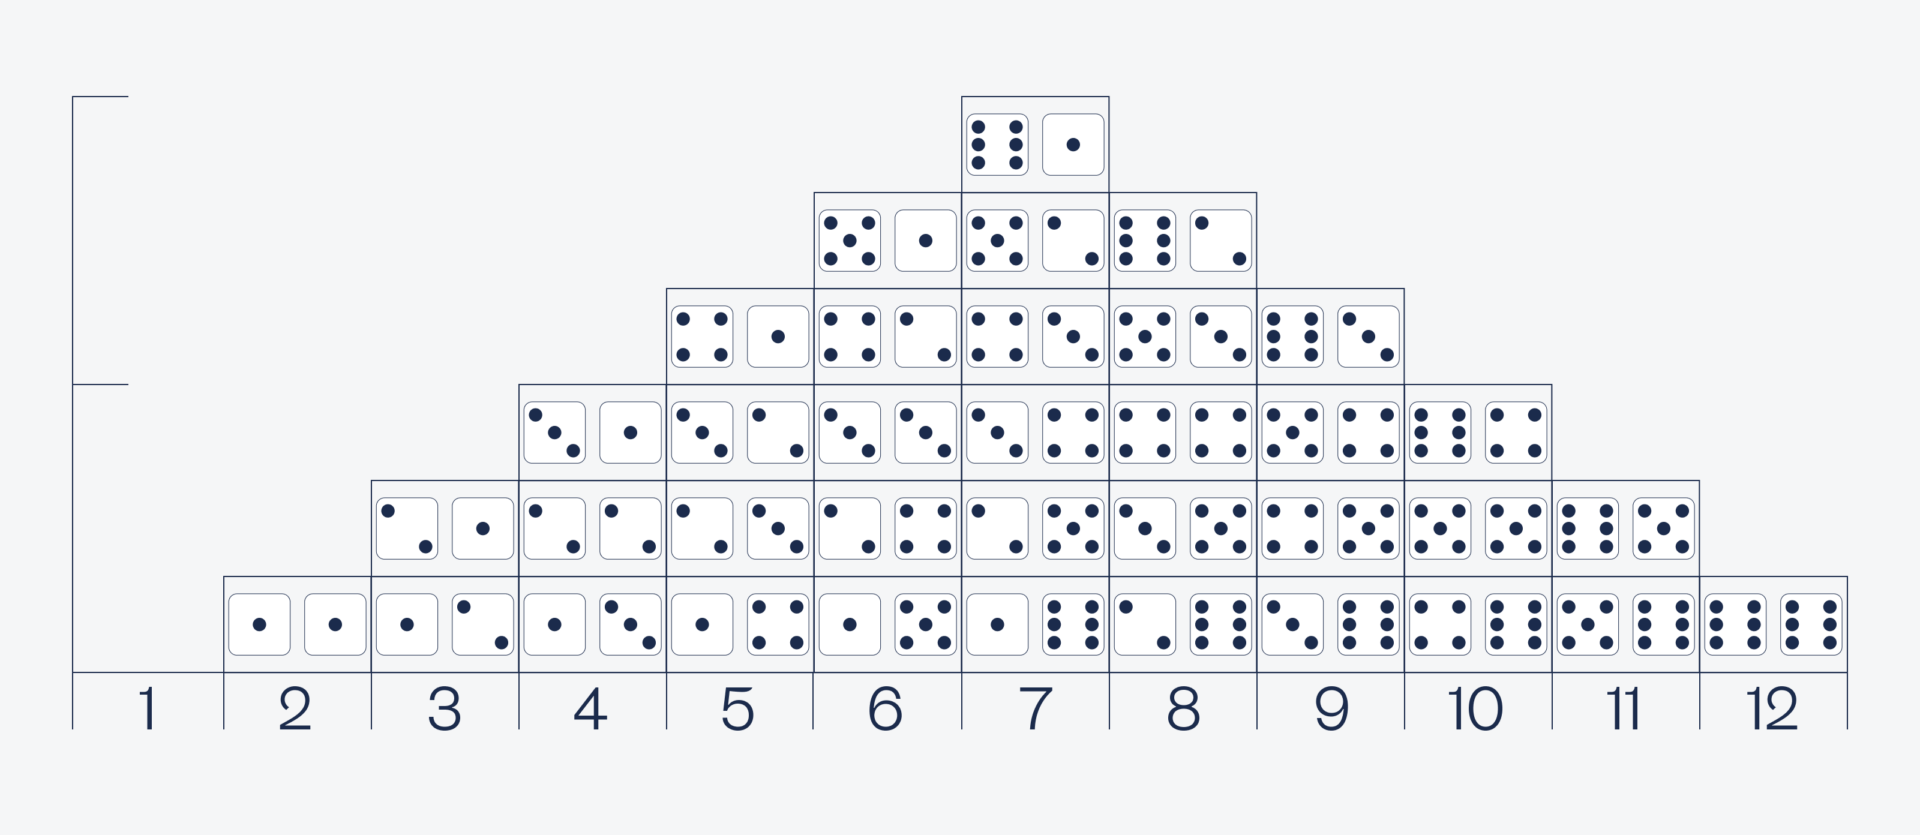 Что общего у игральных кубиков и нормального распределения